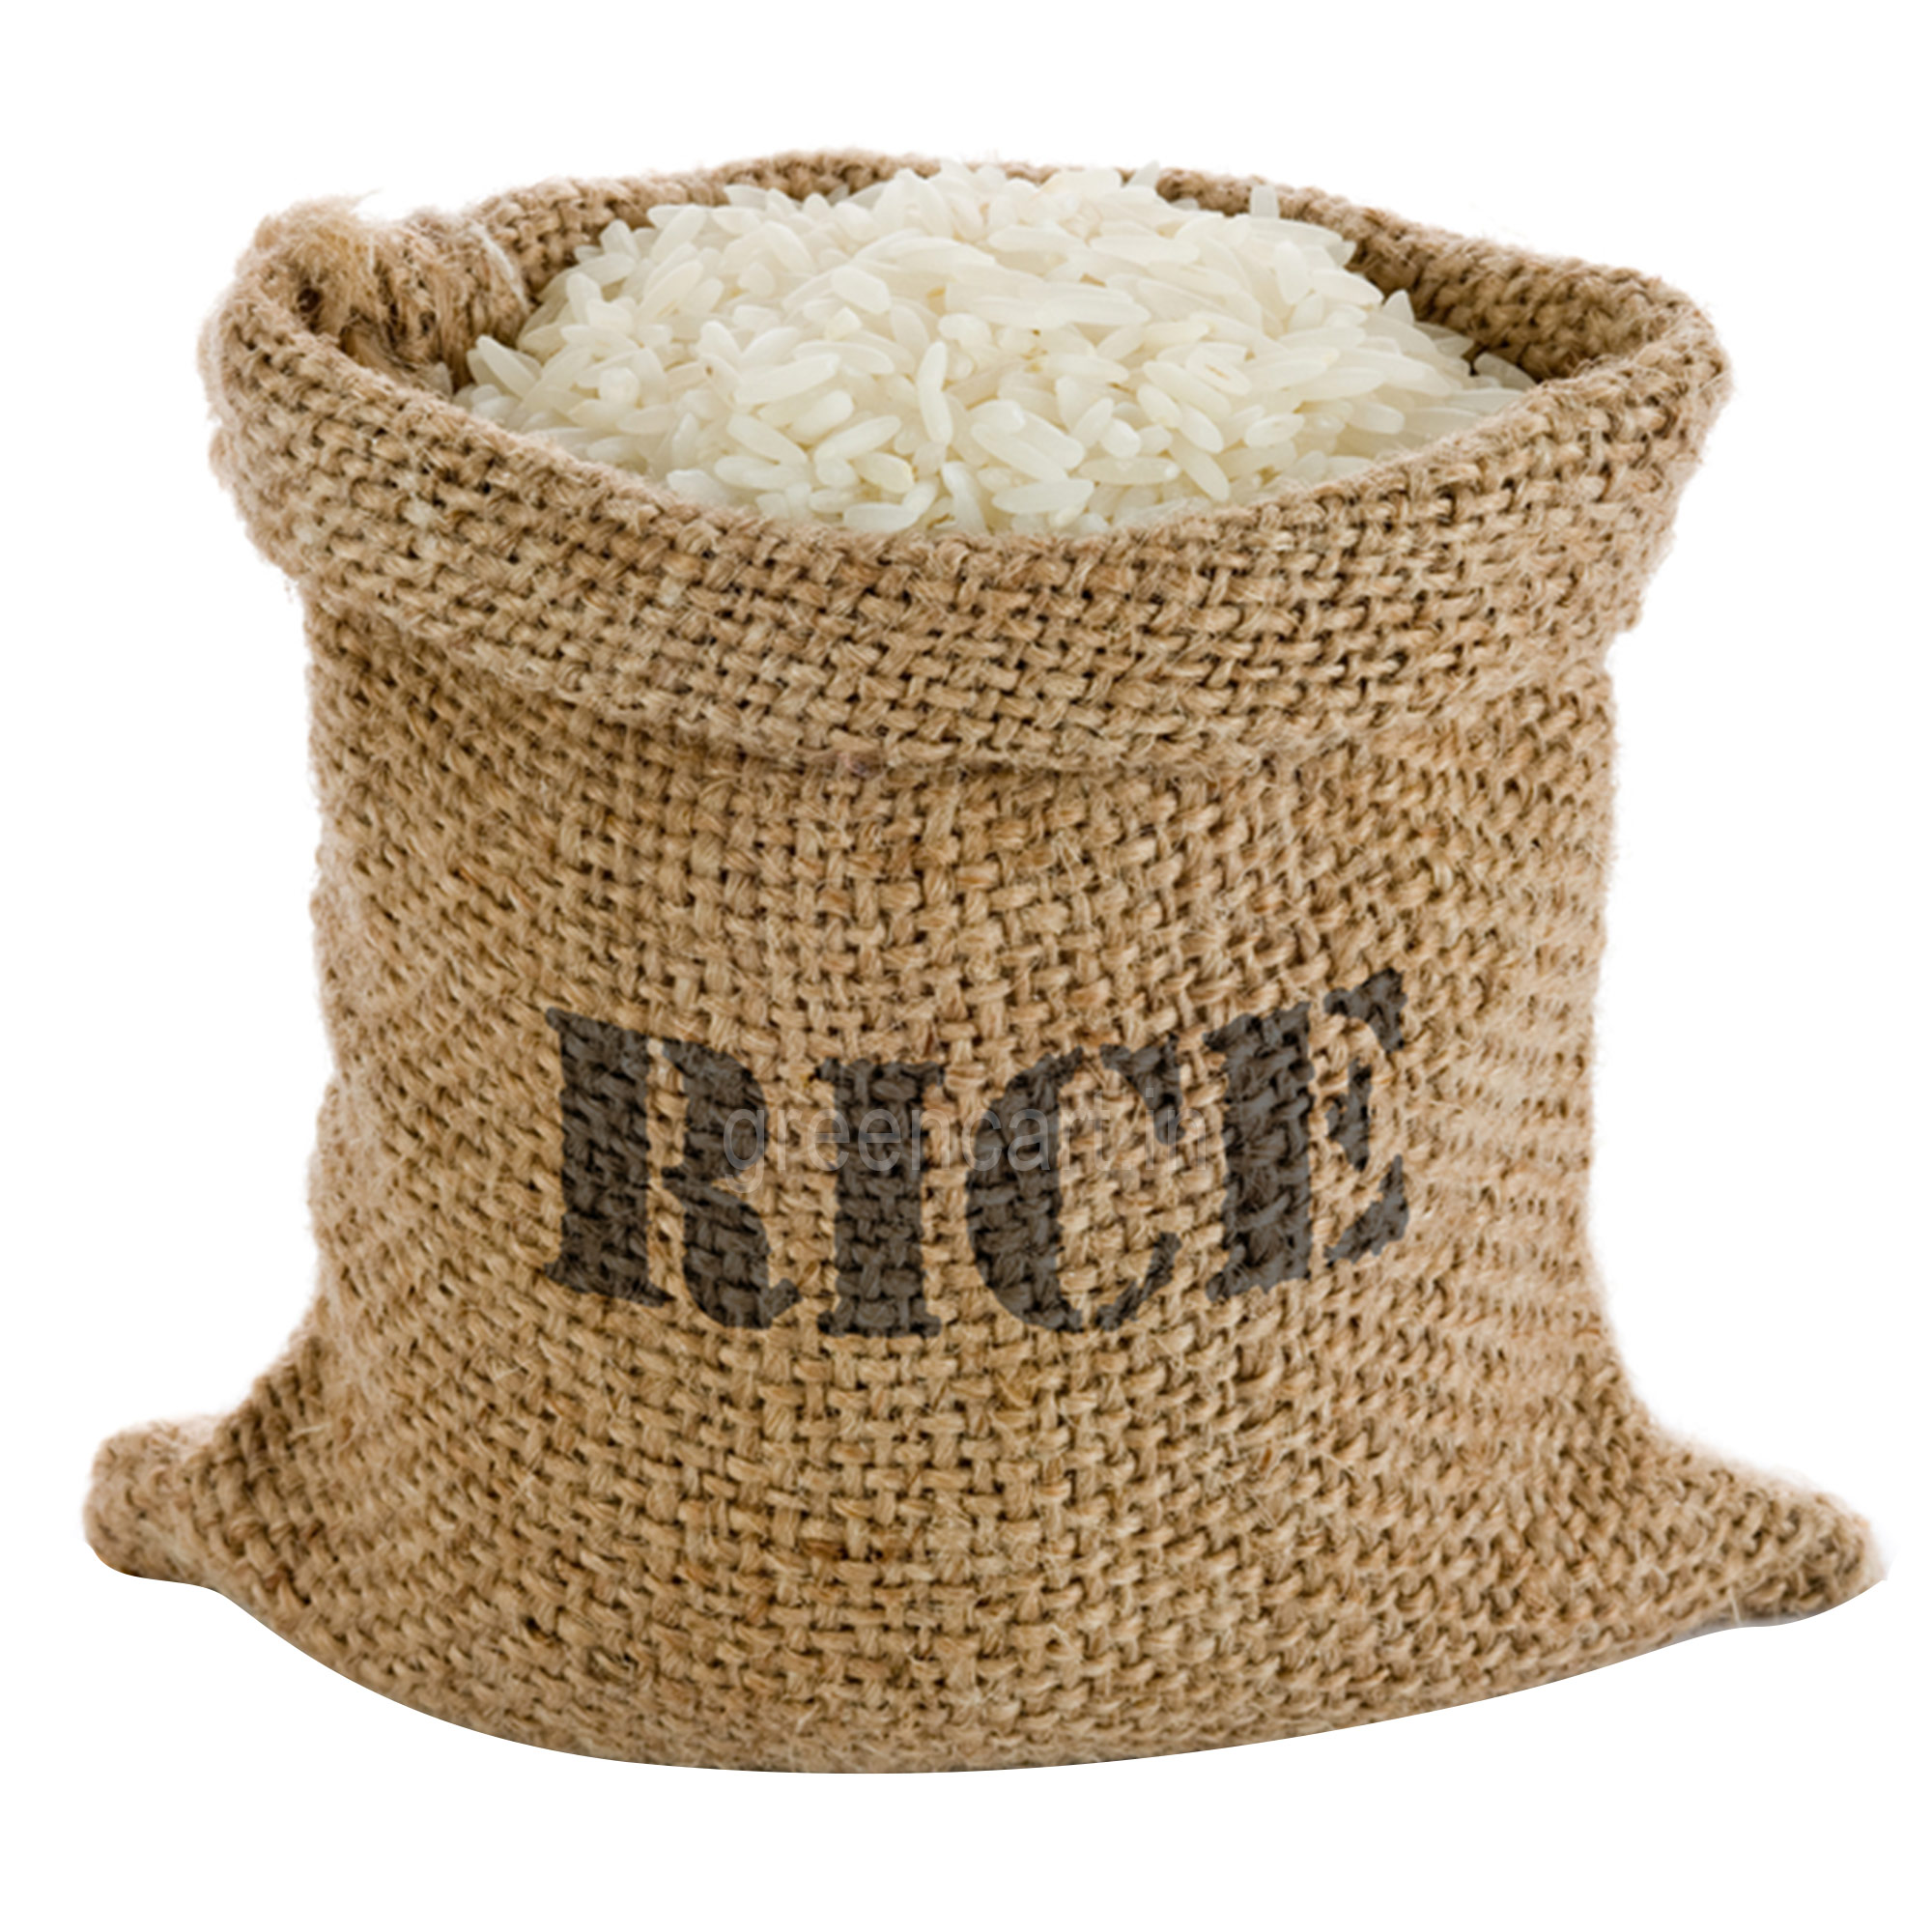 Big rice bag, Rice, Bag, Mida